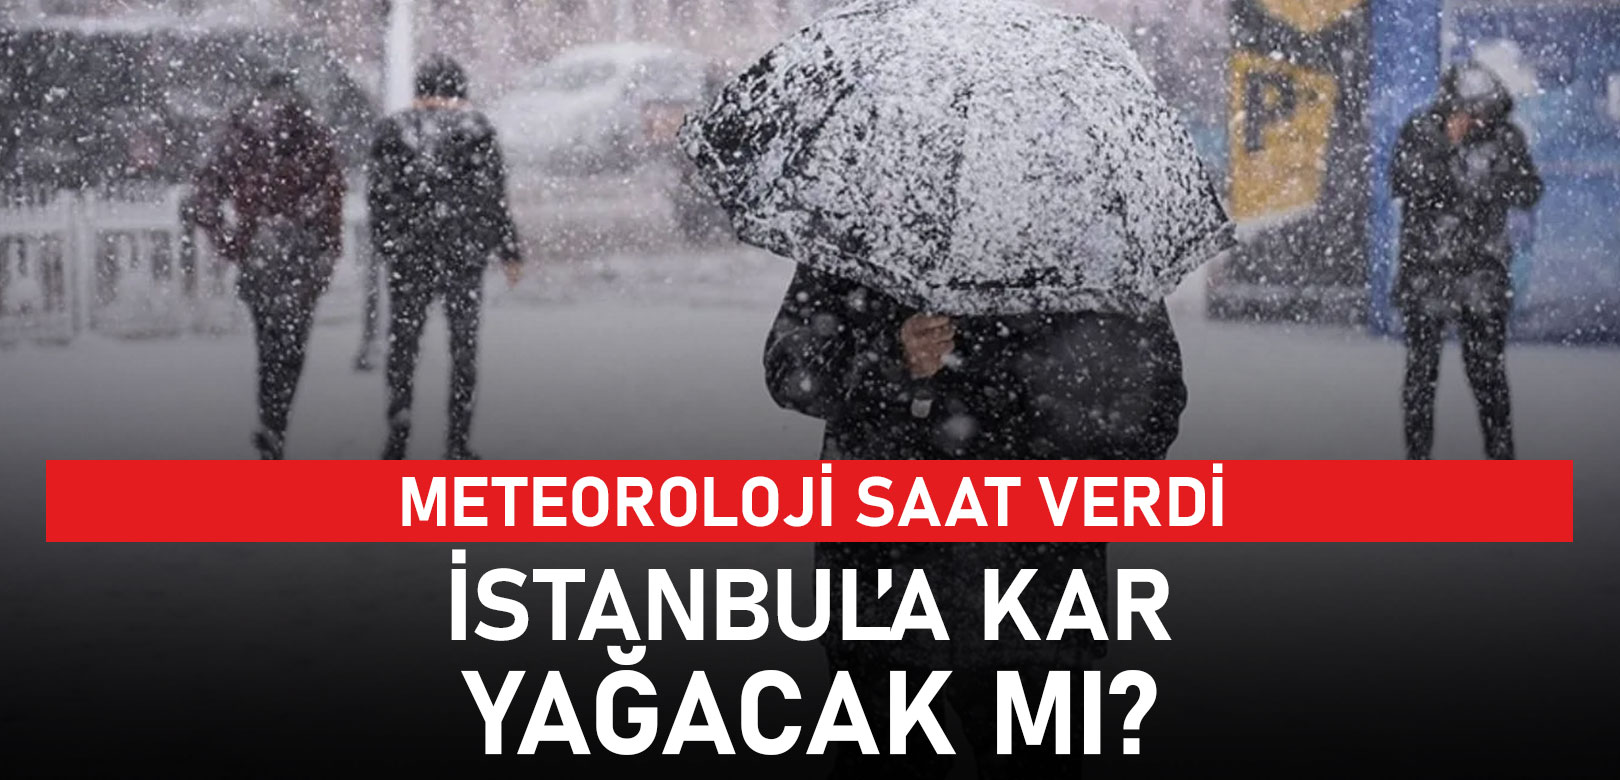 İstanbul'a kar yağacak mı? Meteoroloji saat verdi